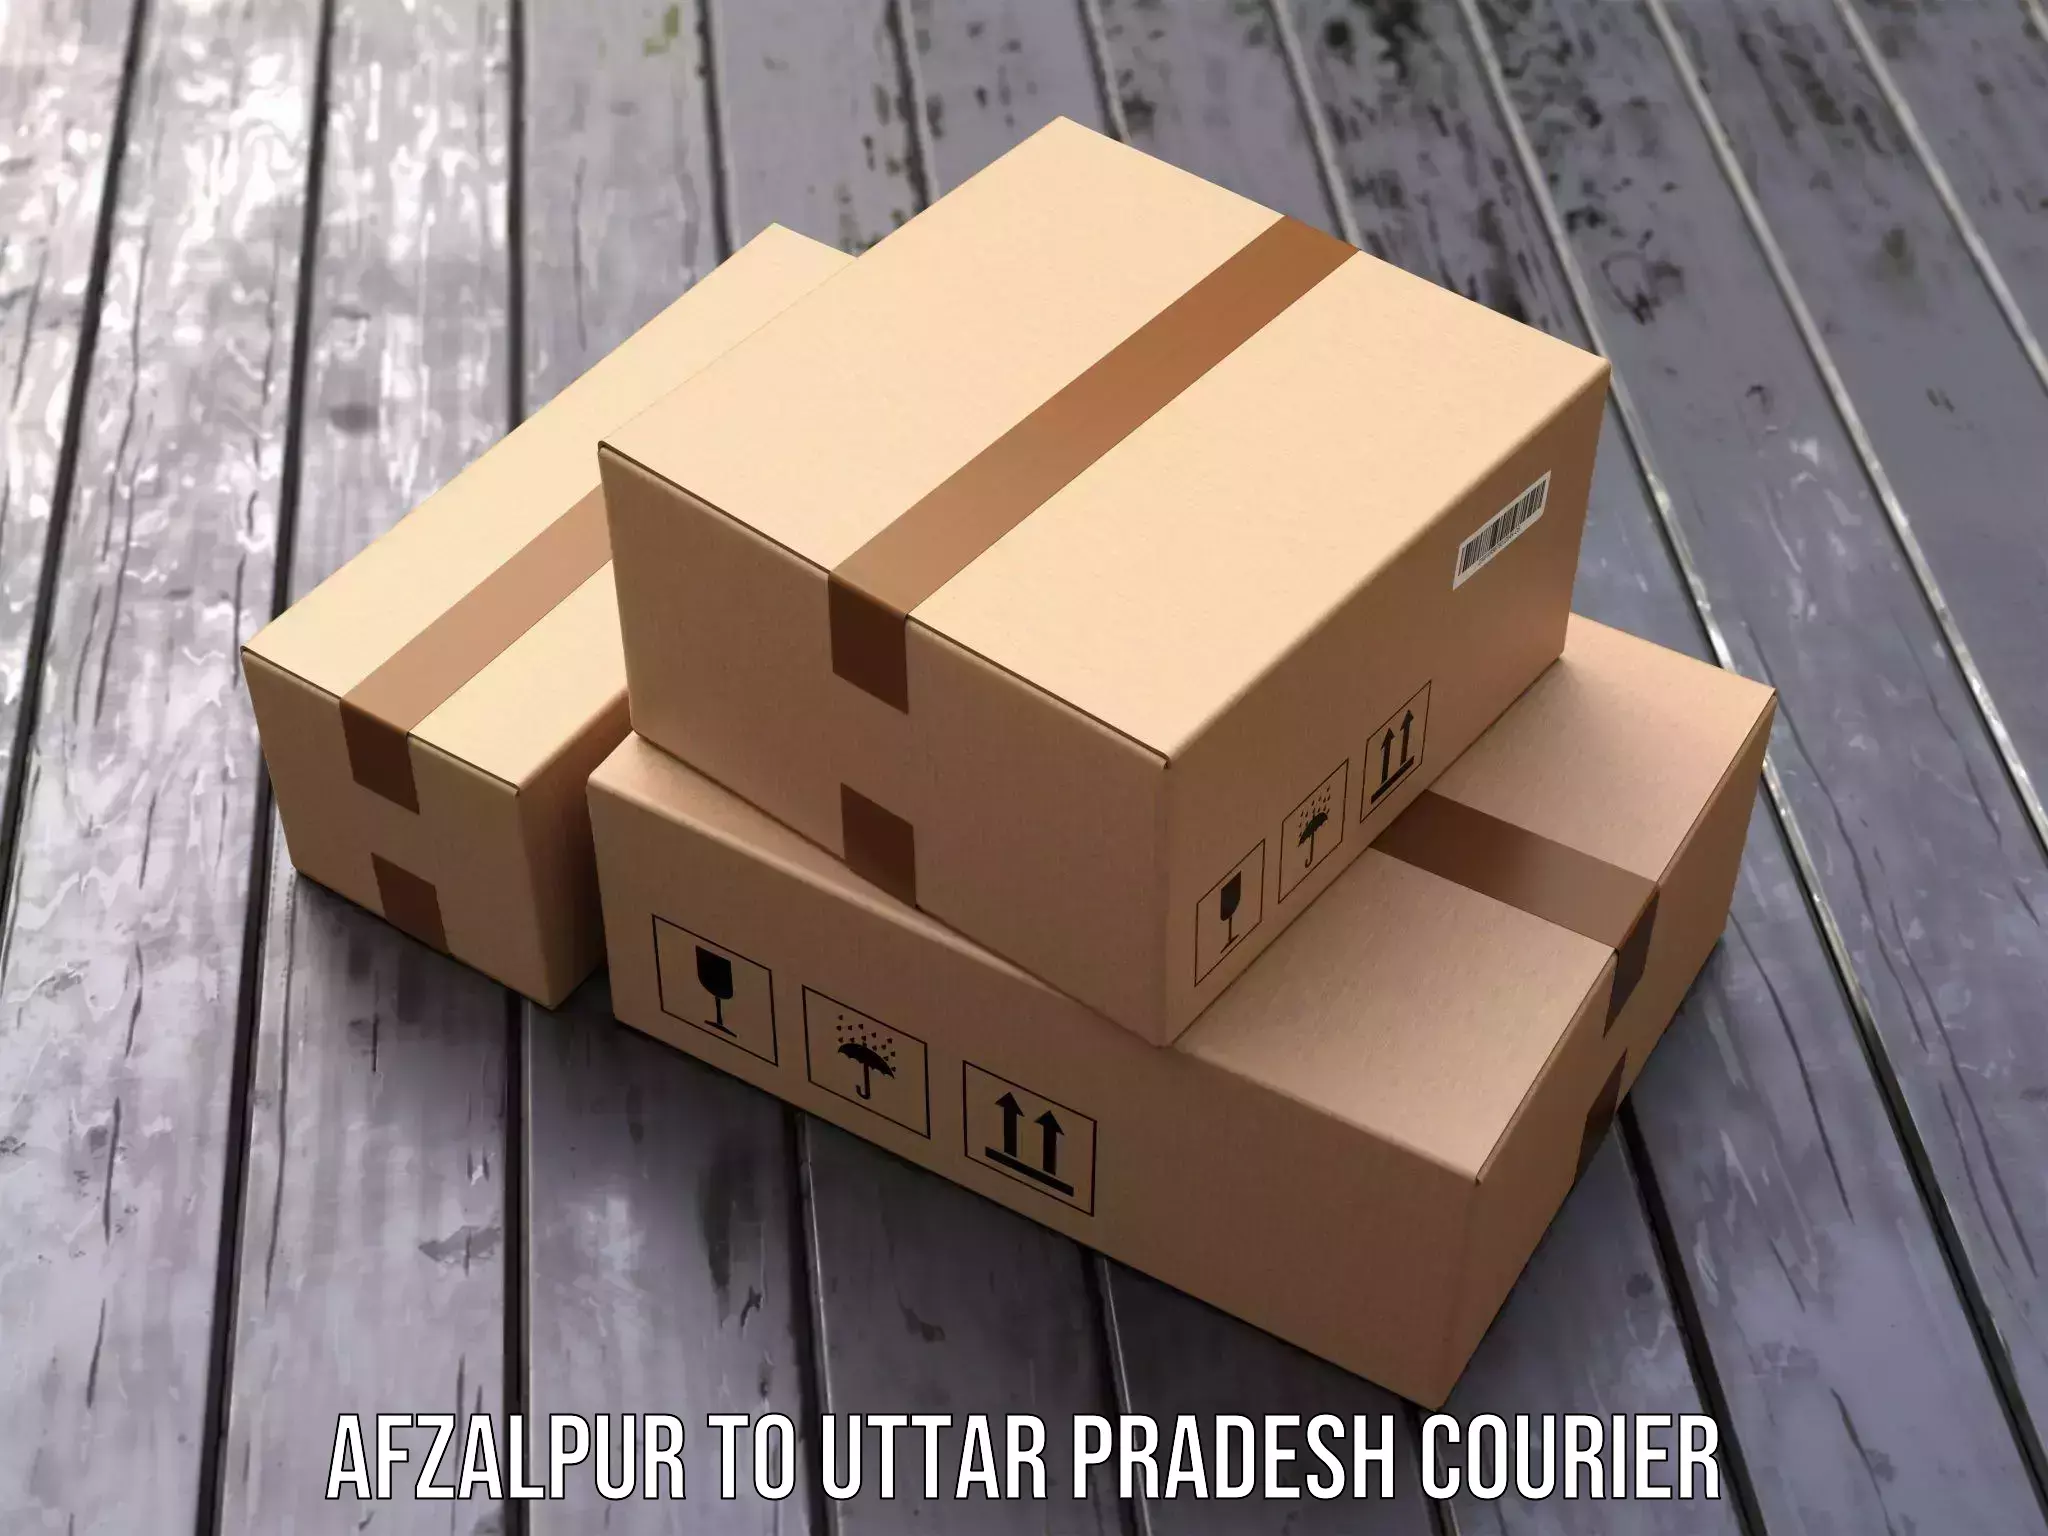 Nationwide courier service Afzalpur to Uttar Pradesh